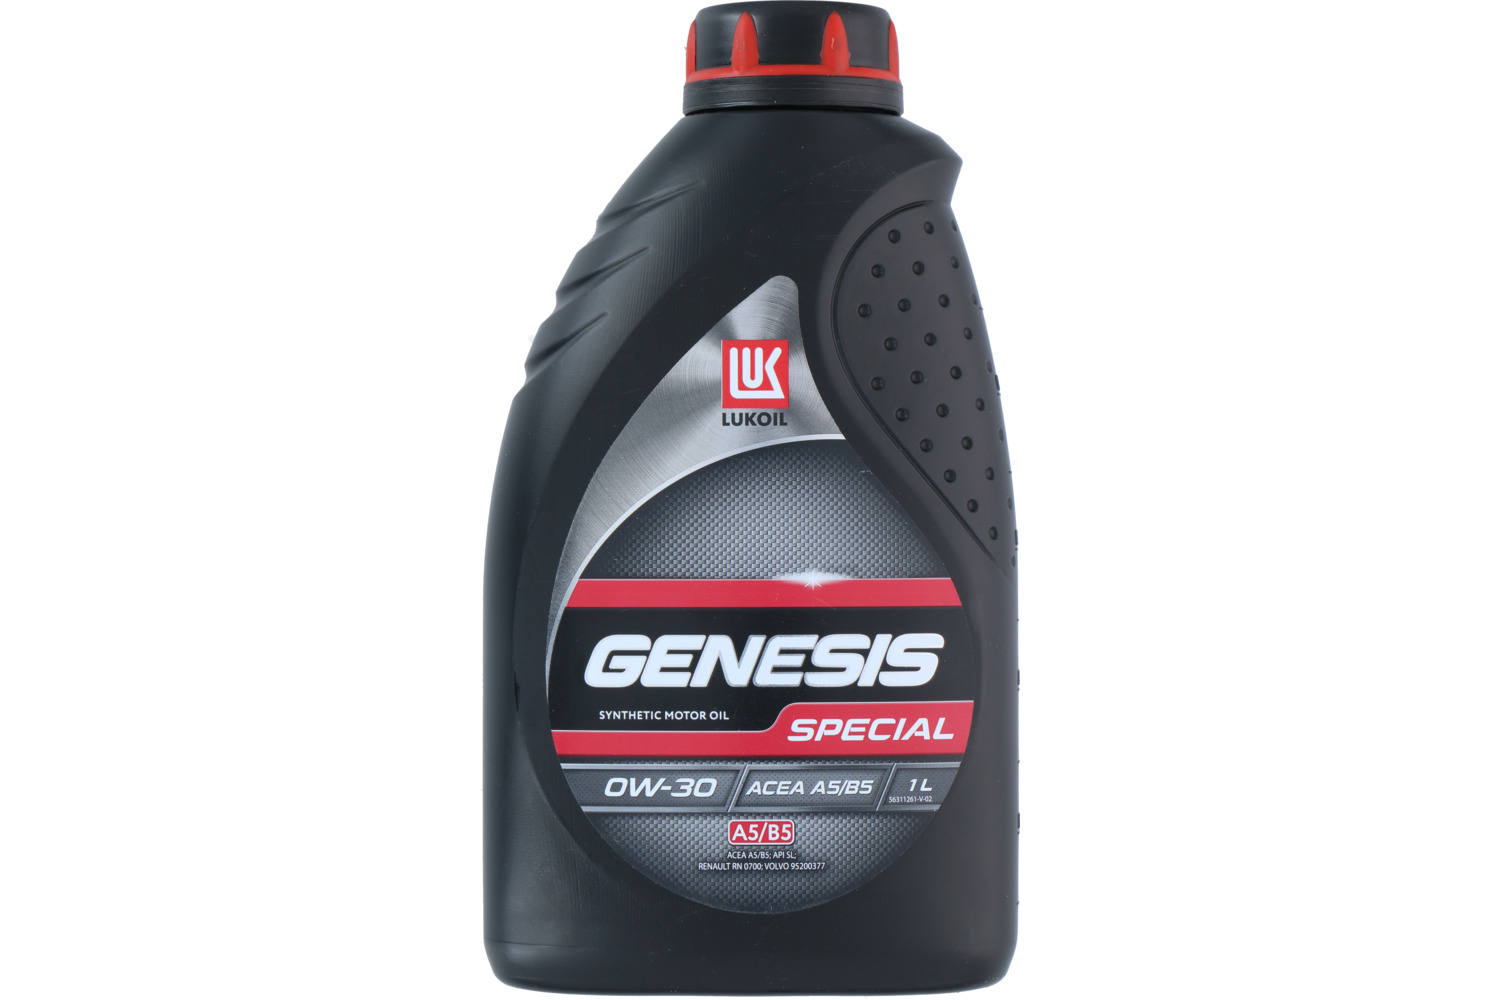 Motorolie, Lukoil Genesis Special, 0W30 A5/B5, 1l 2